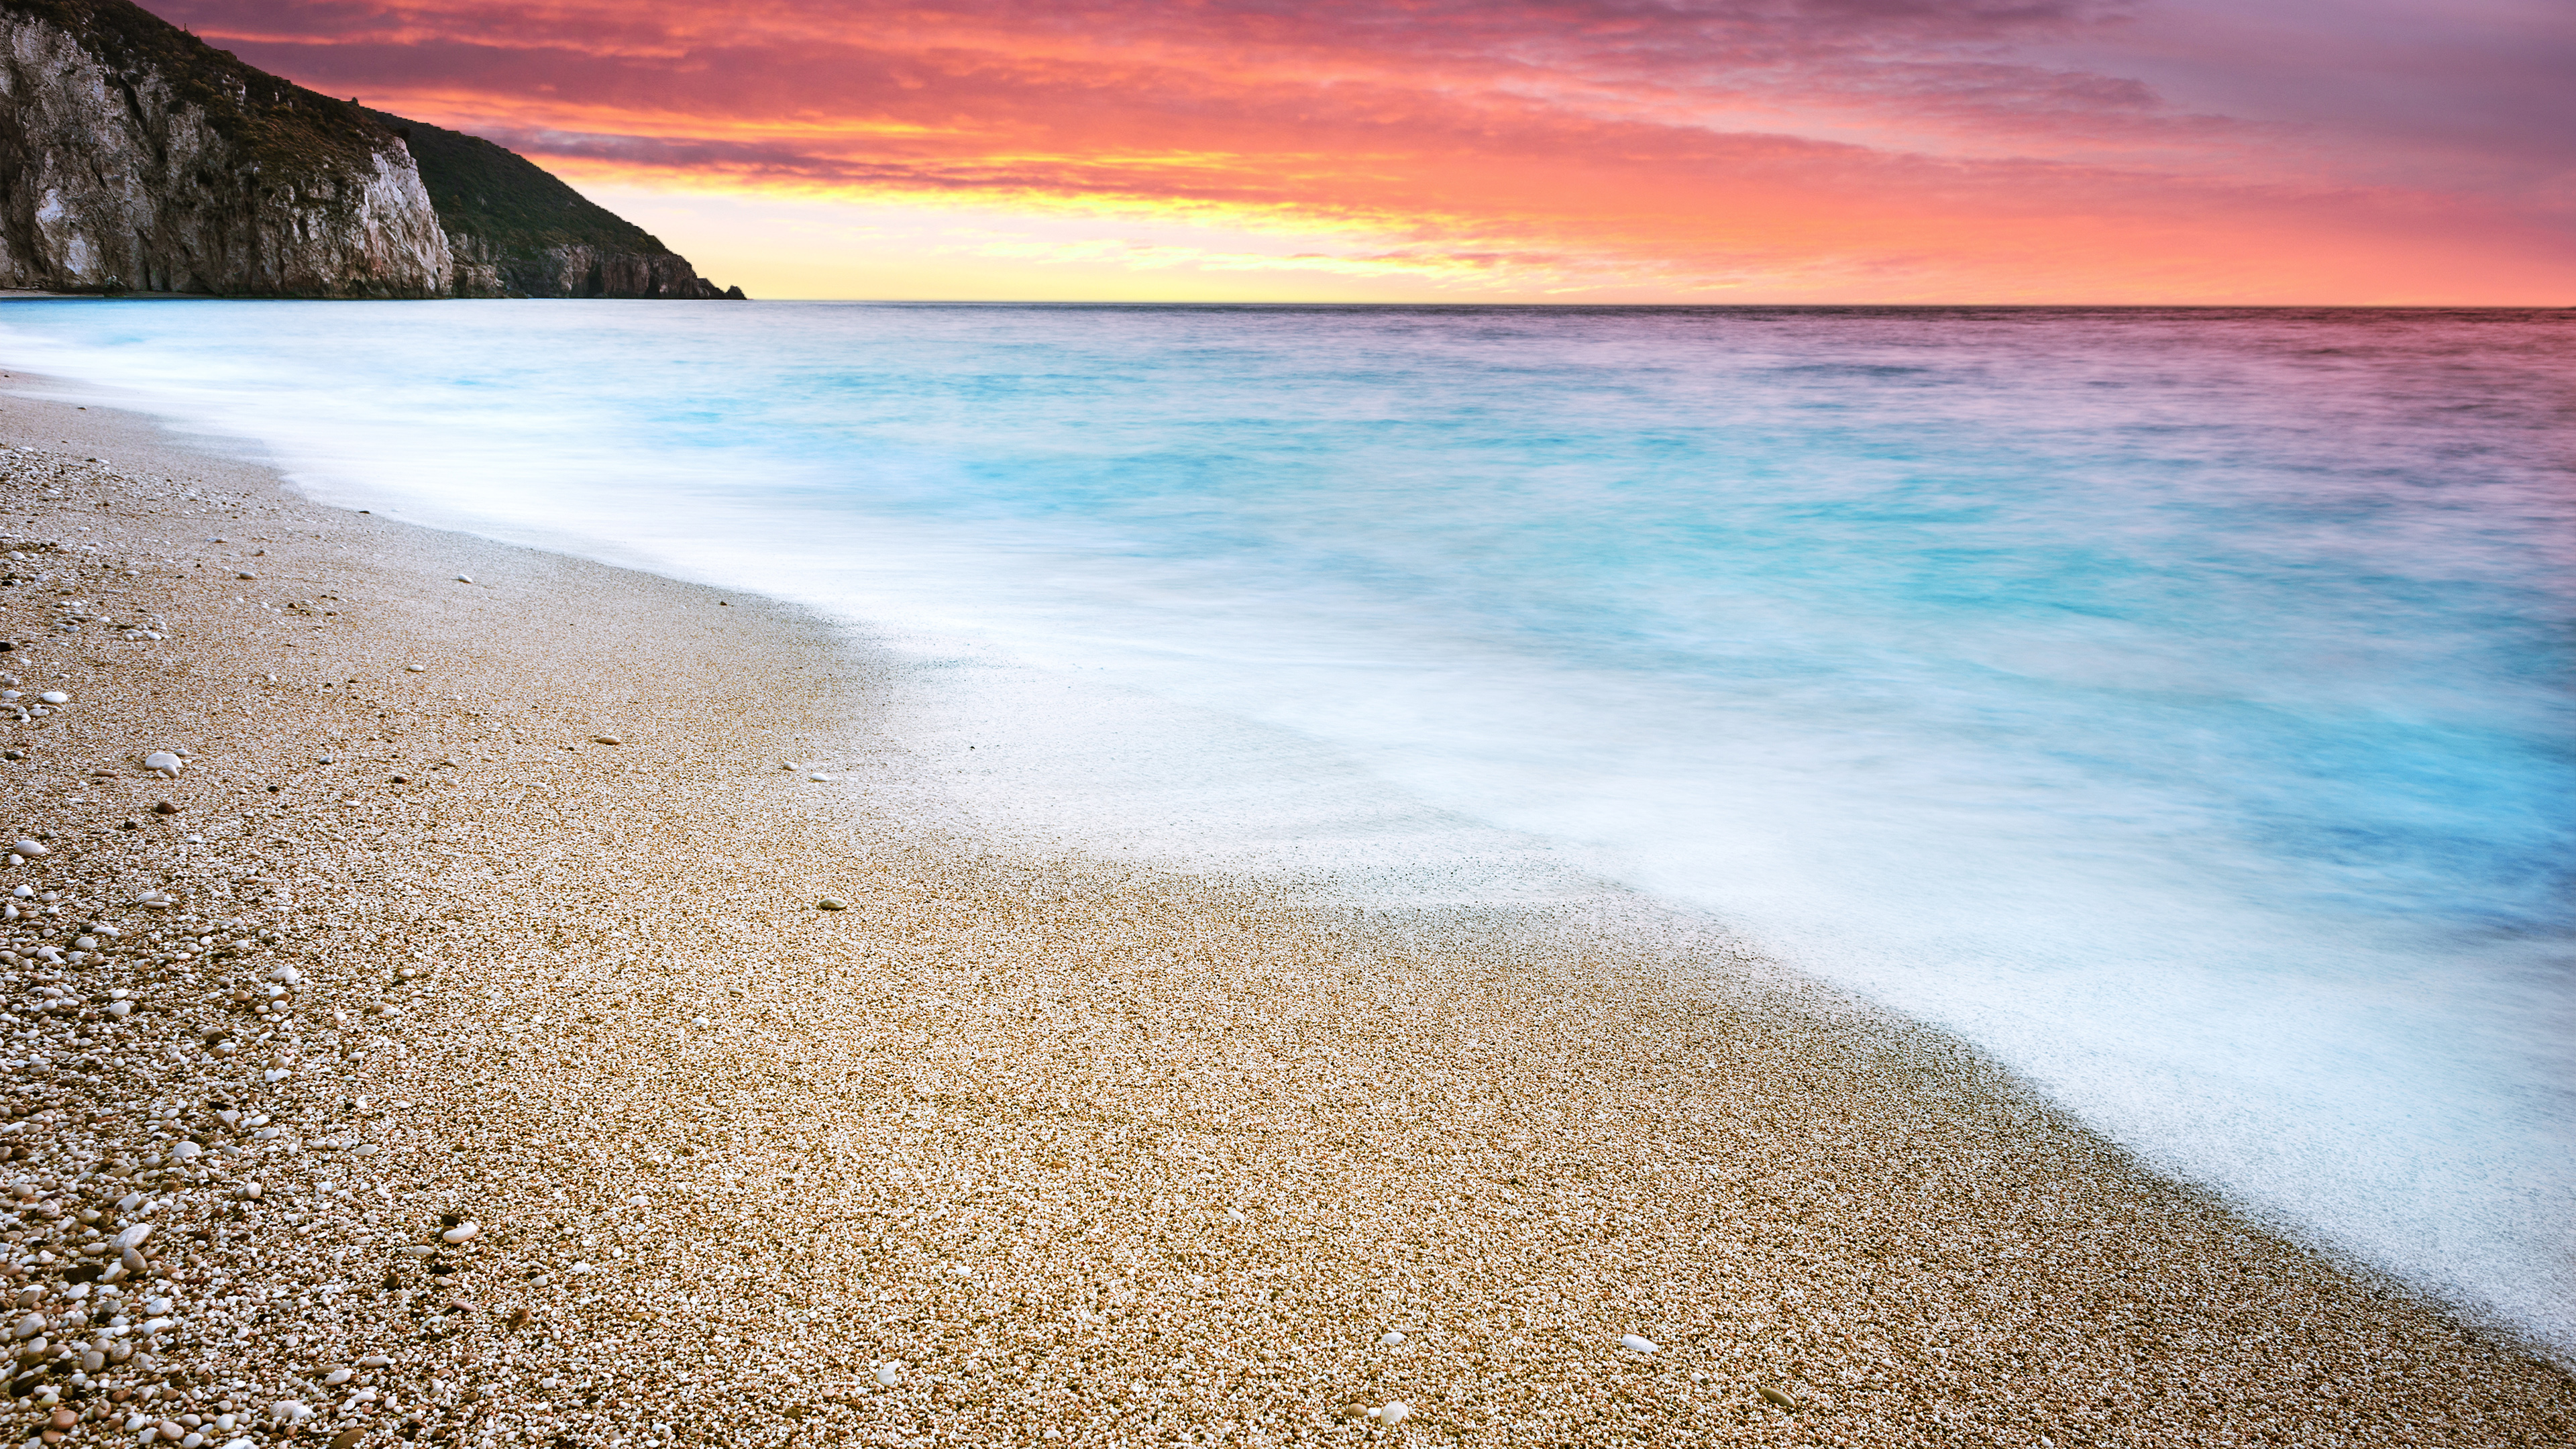 Milos Beach Sunset